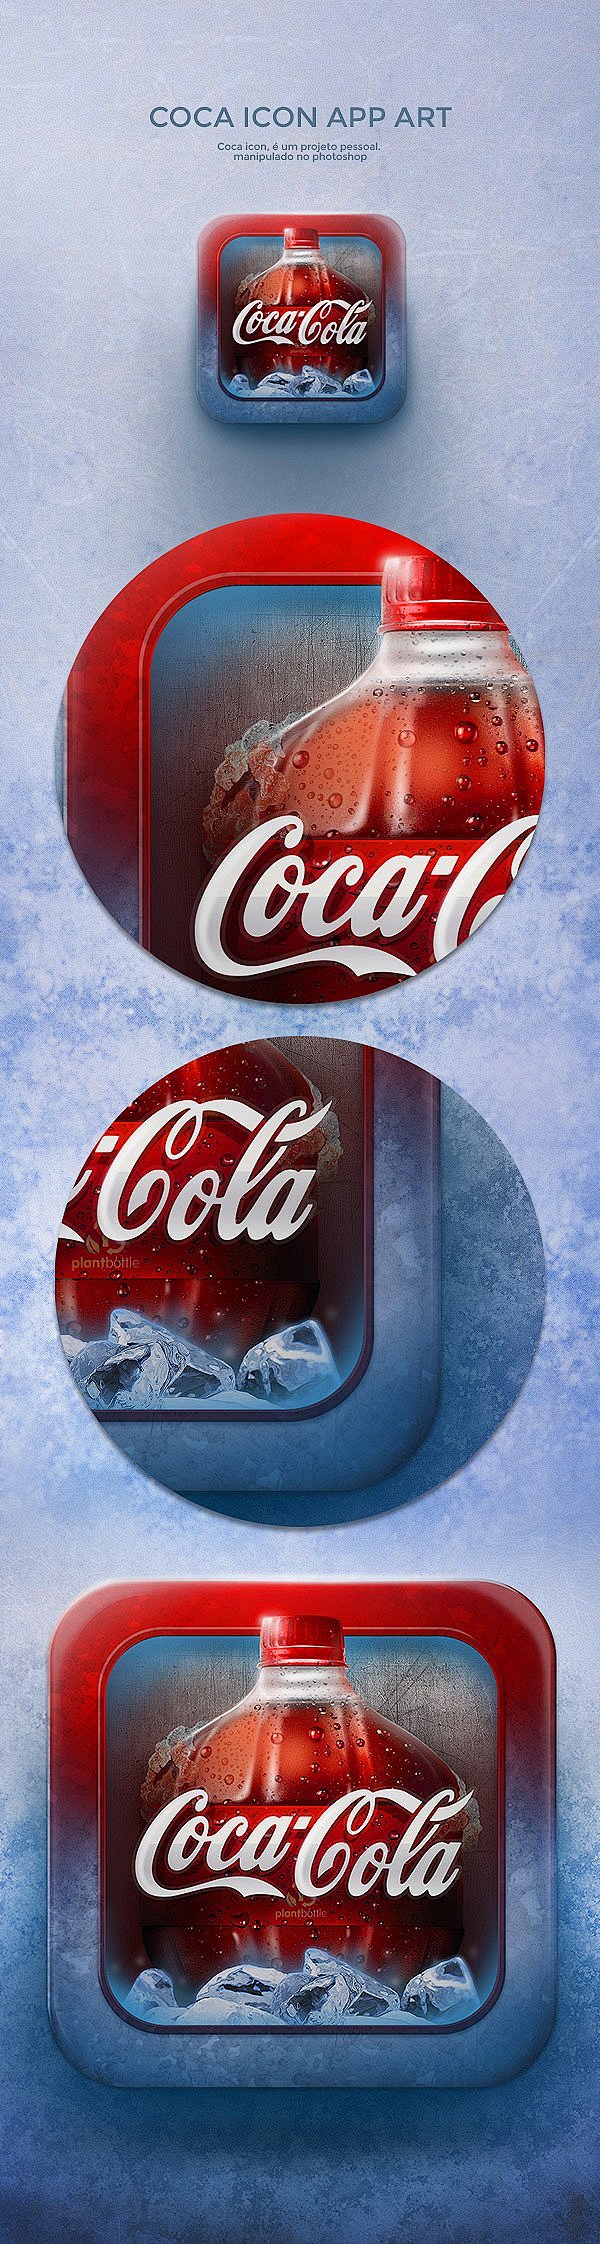 可口可乐图标设计